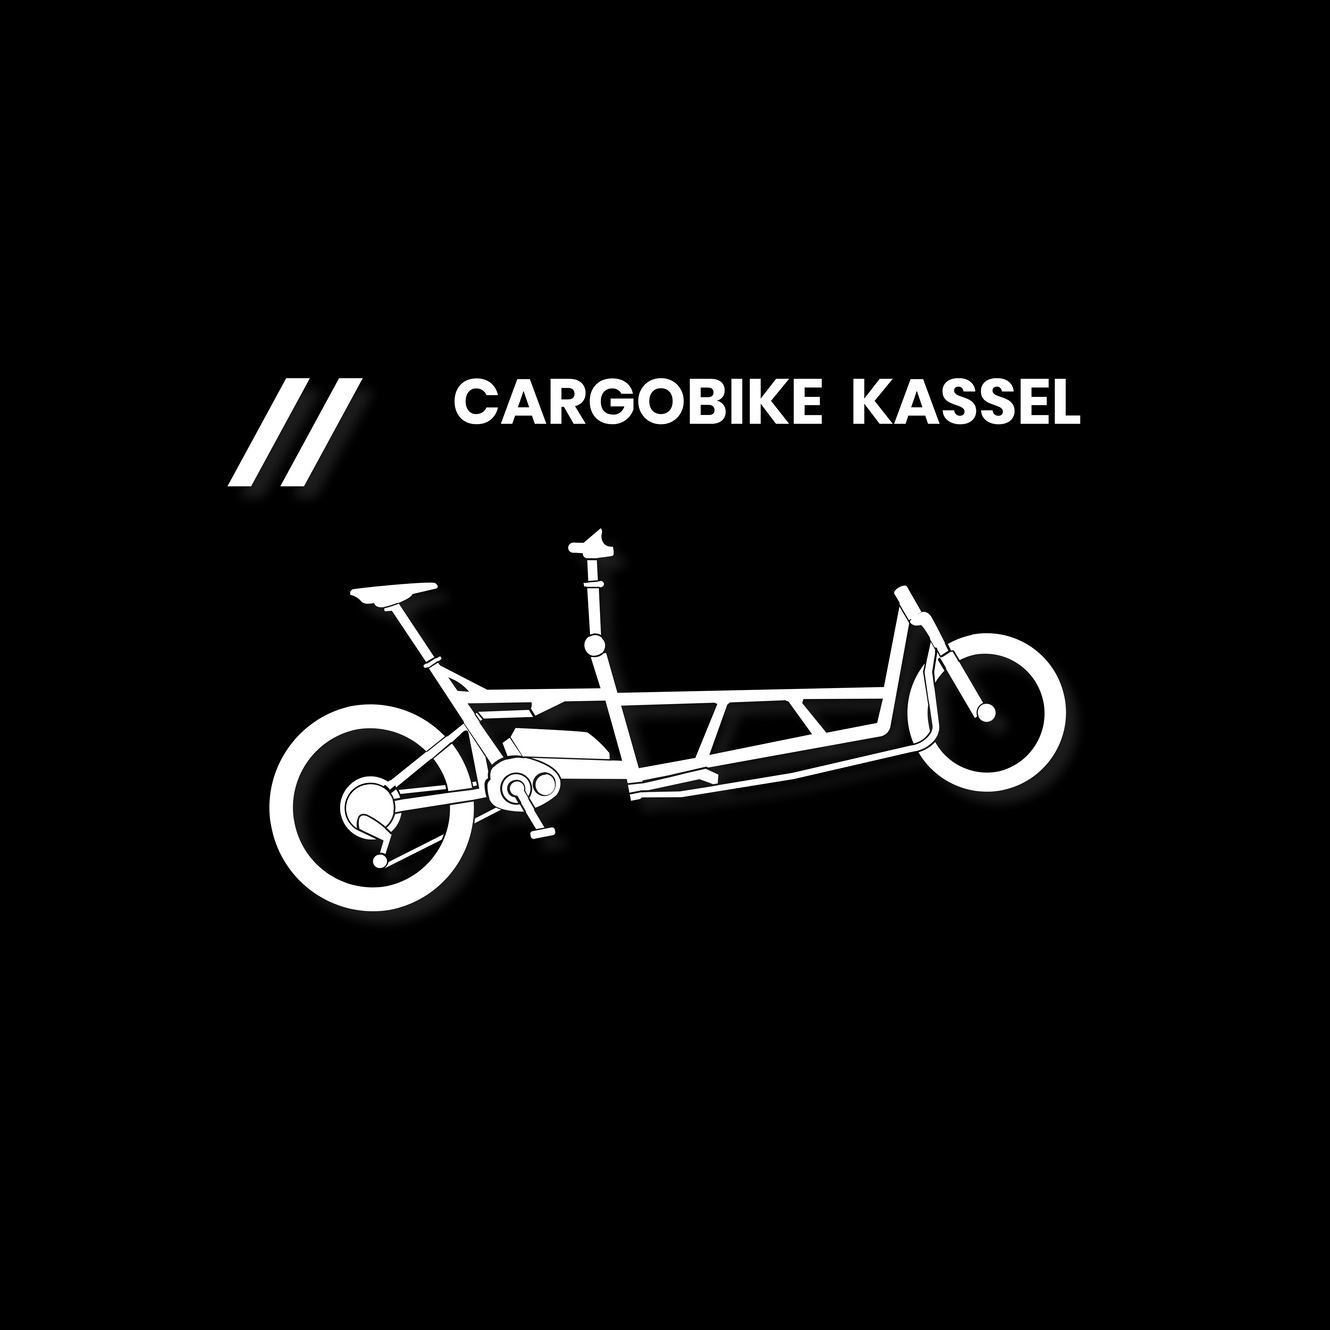 www.cargobike-kassel.de